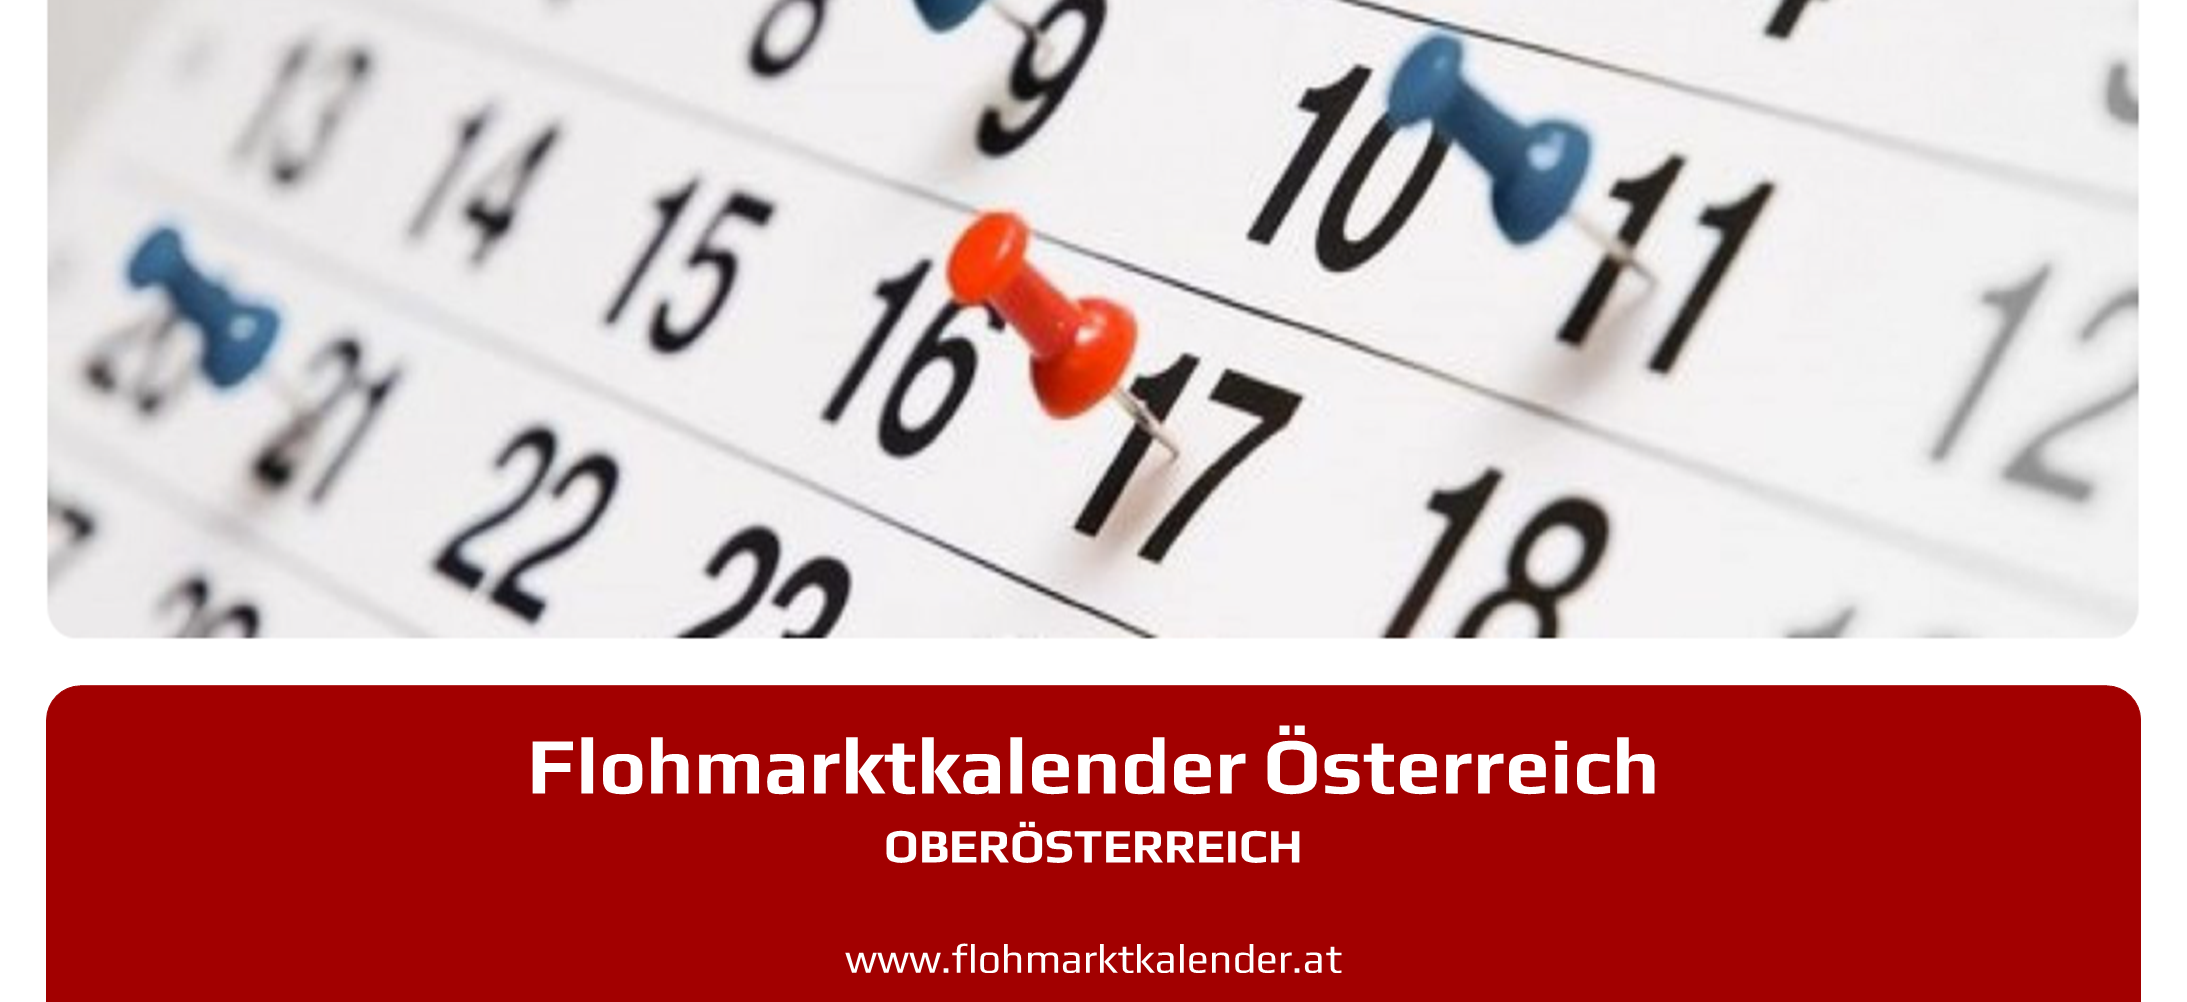 Flohmarktkalender Oberoesterreich 9